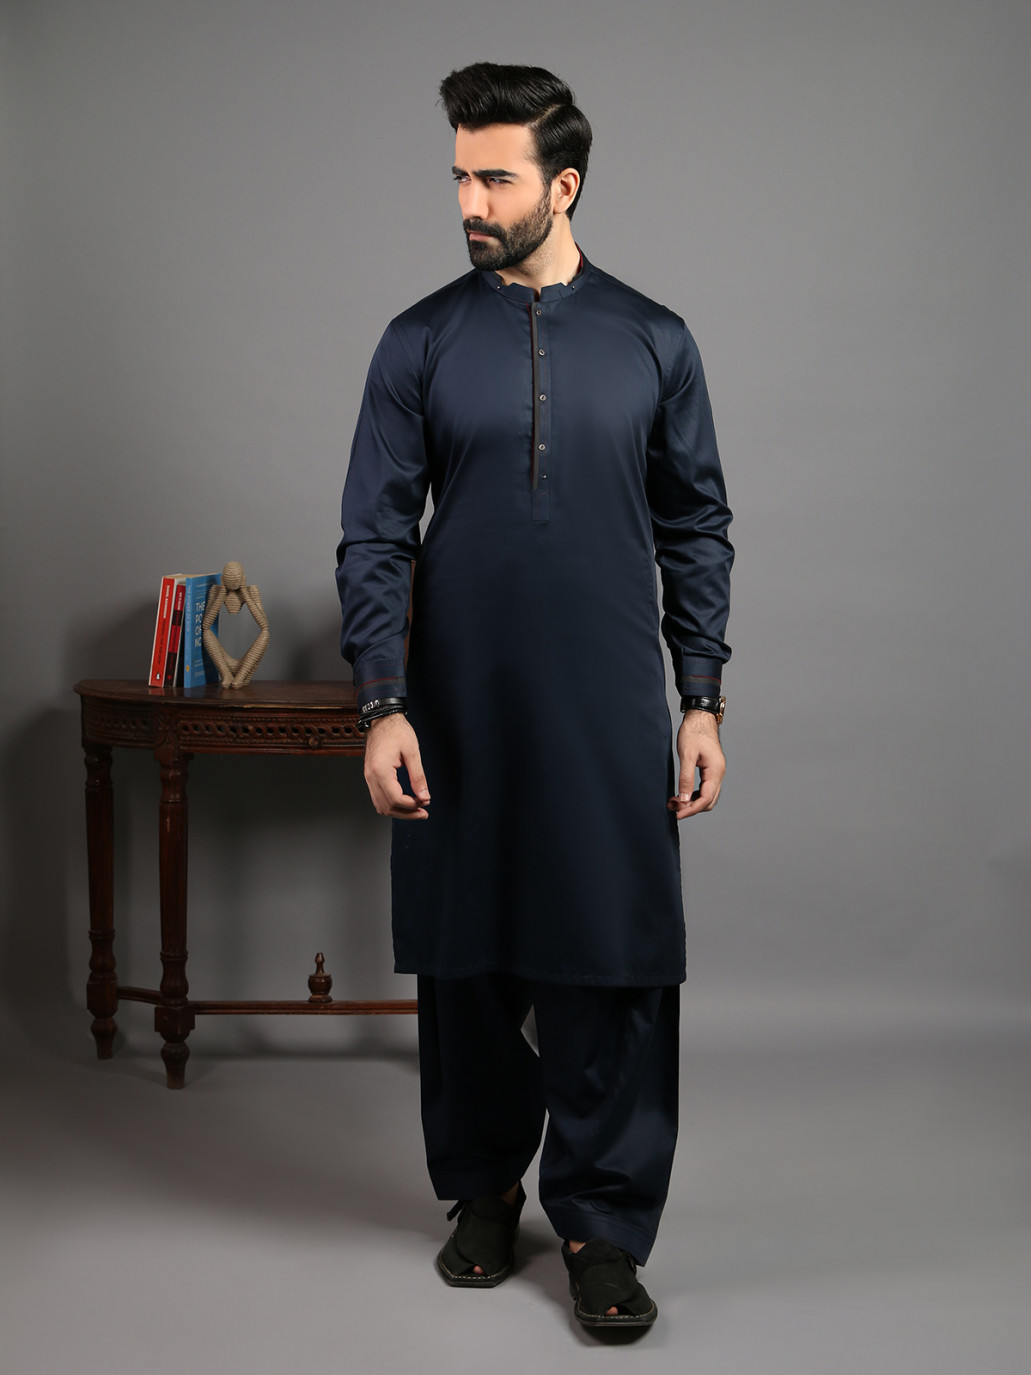 Shalwar Kameez New Fashion Dress For Boys 2020 : For mens shalwar ...